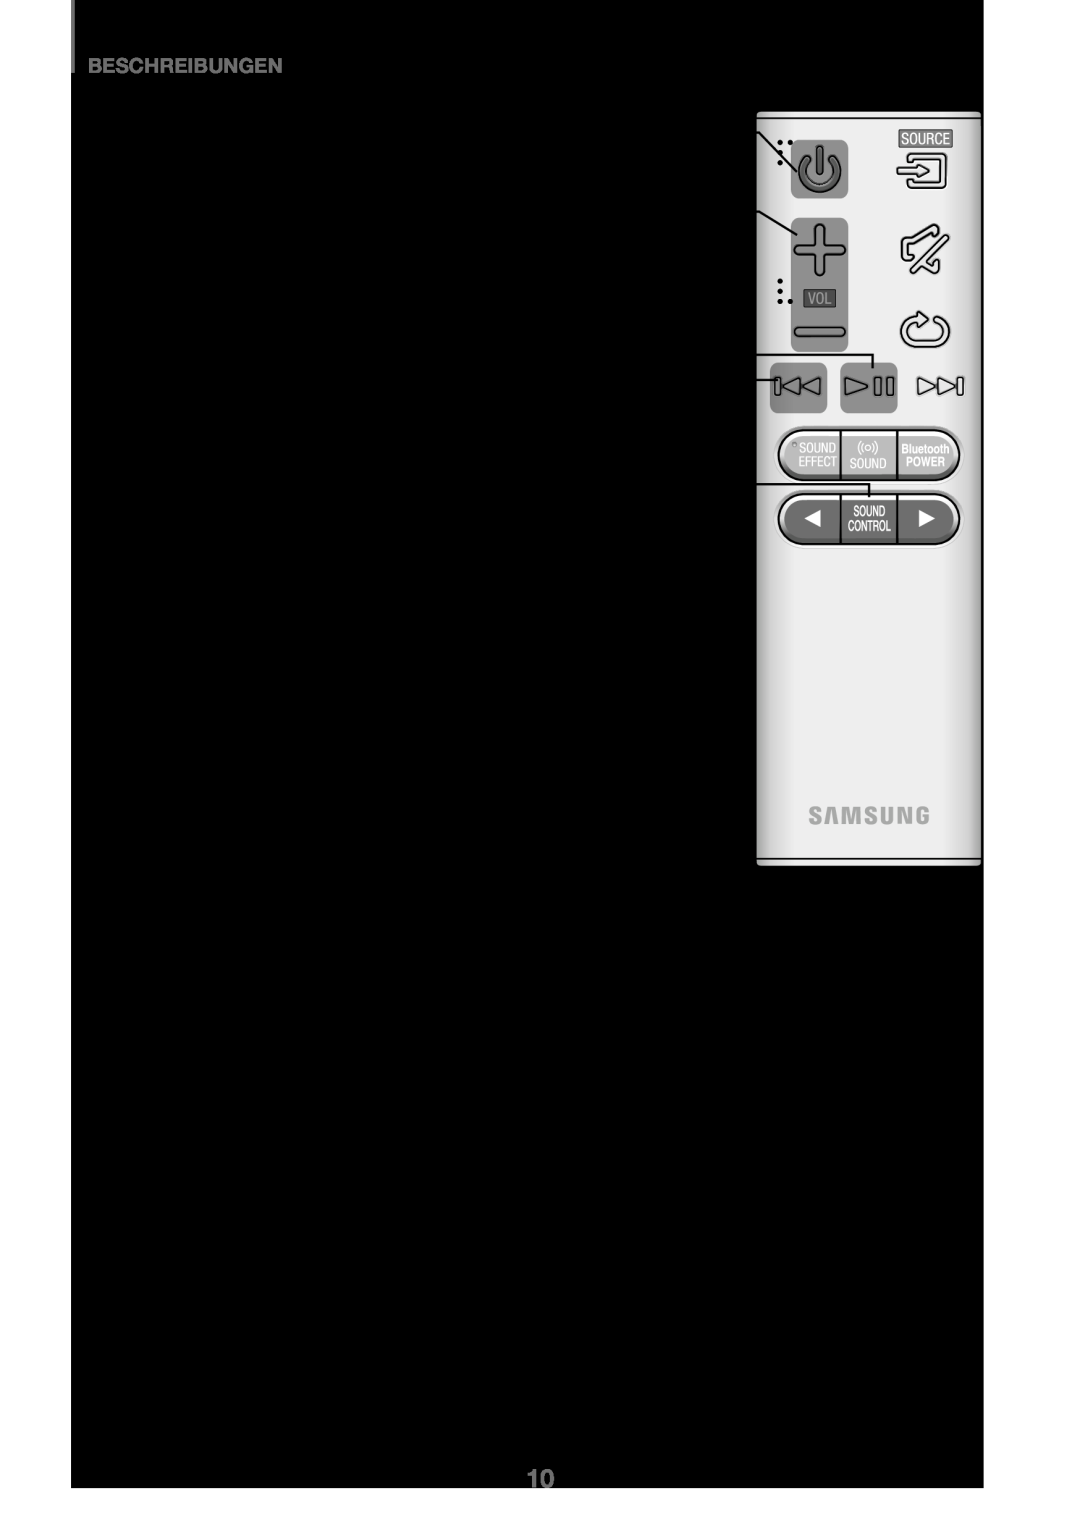 Samsung HW-K450/EN, HW-J450/EN manual Beschreibungen, Stromversorgung, Lautstärke, Wiedergabe / Pause, Rückwärts springen 